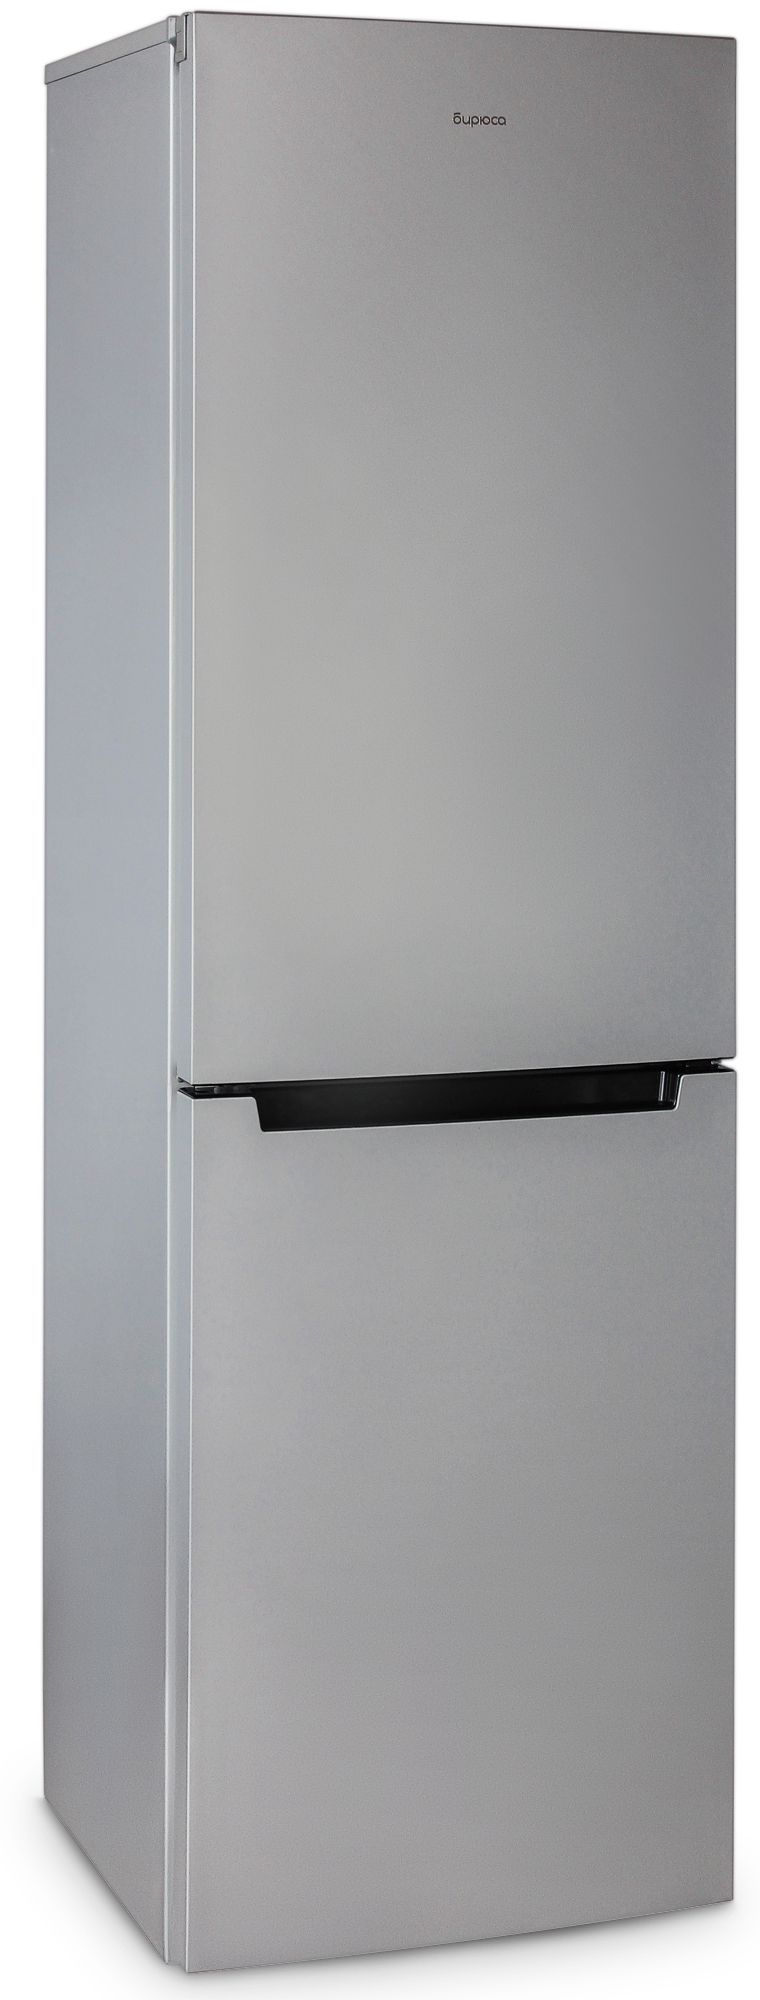 холодильник бирюса 880nf, купить в Красноярске холодильник бирюса 880nf,  купить в Красноярске дешево холодильник бирюса 880nf, купить в Красноярске минимальной цене холодильник бирюса 880nf